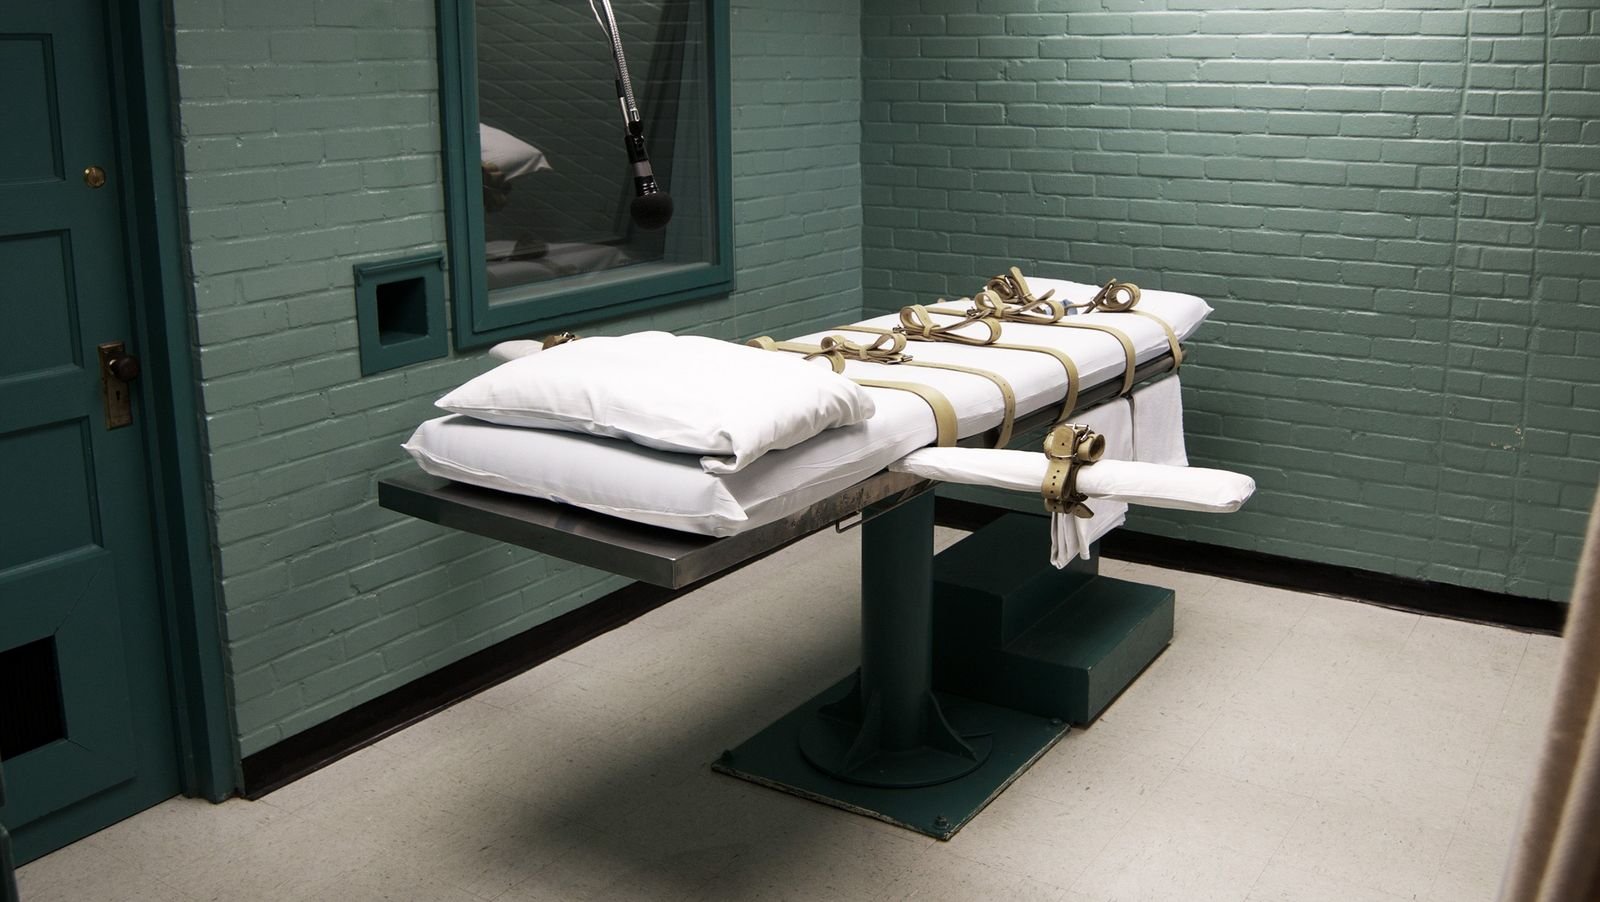 Plongée dans les couloirs de la mort - Reportages